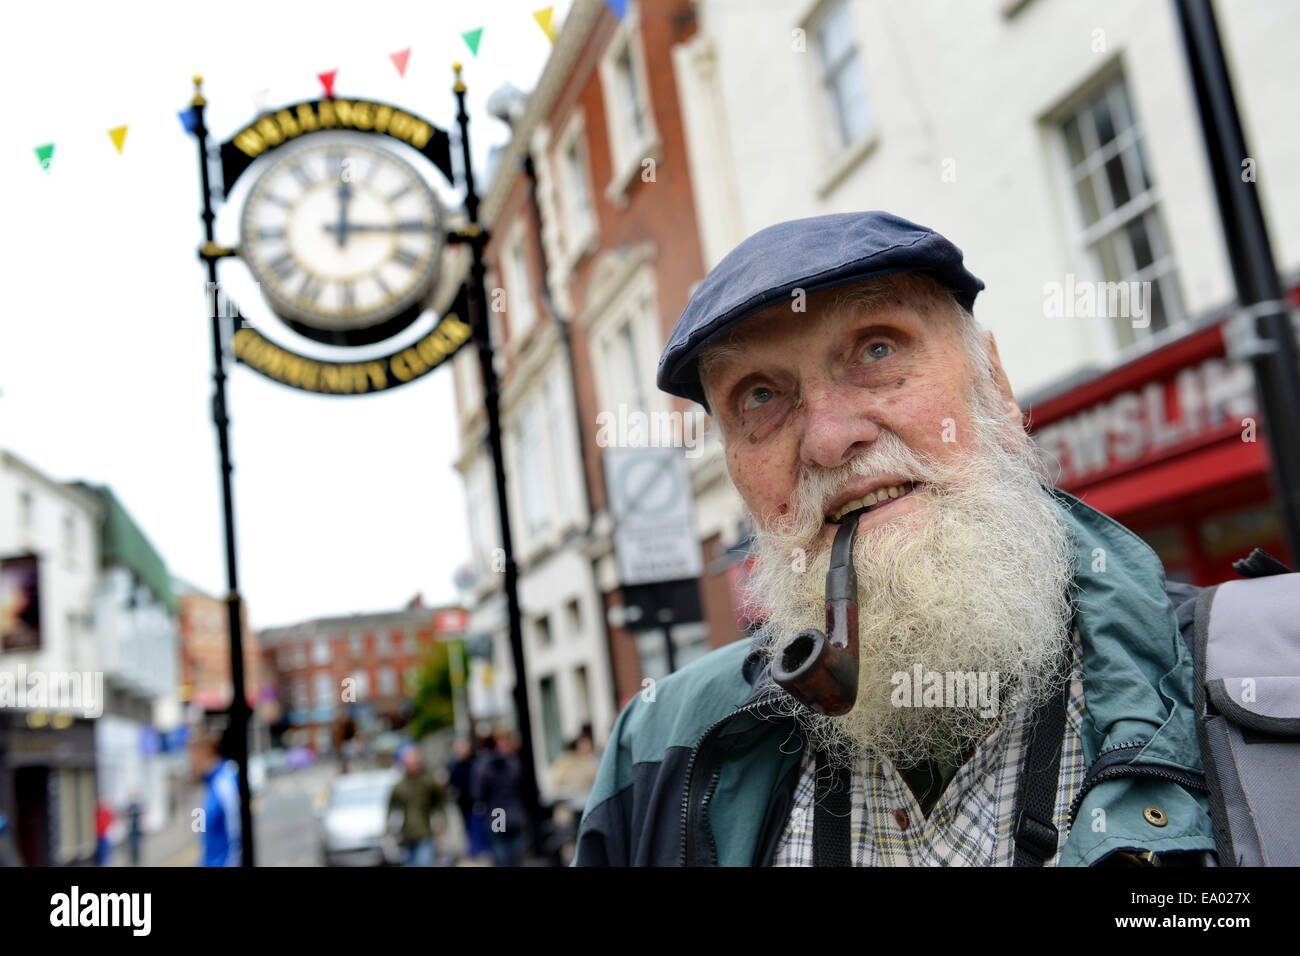 Wellington Historiker George Evans im Alter von 91 raucht seine Pfeife in der Stadt liebt er Wellington Shropshire Uk. Stockfoto